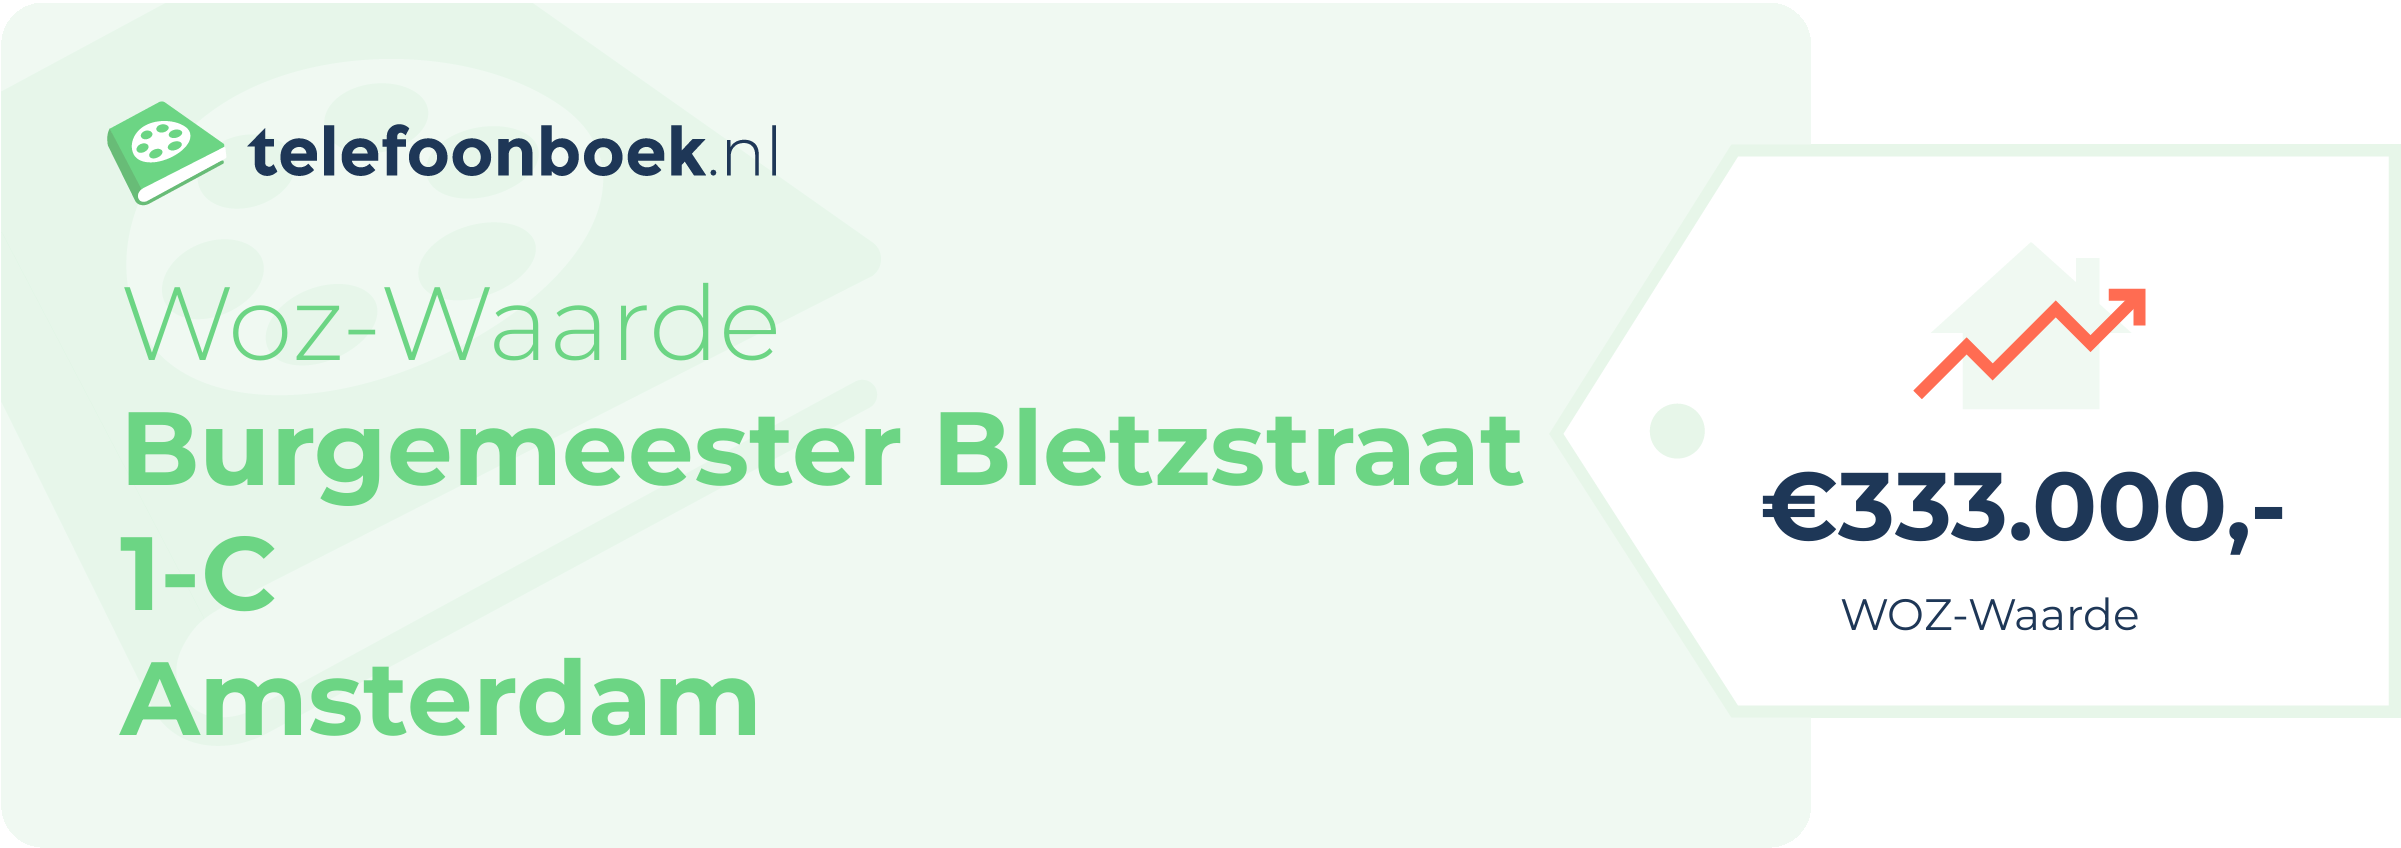 WOZ-waarde Burgemeester Bletzstraat 1-C Amsterdam